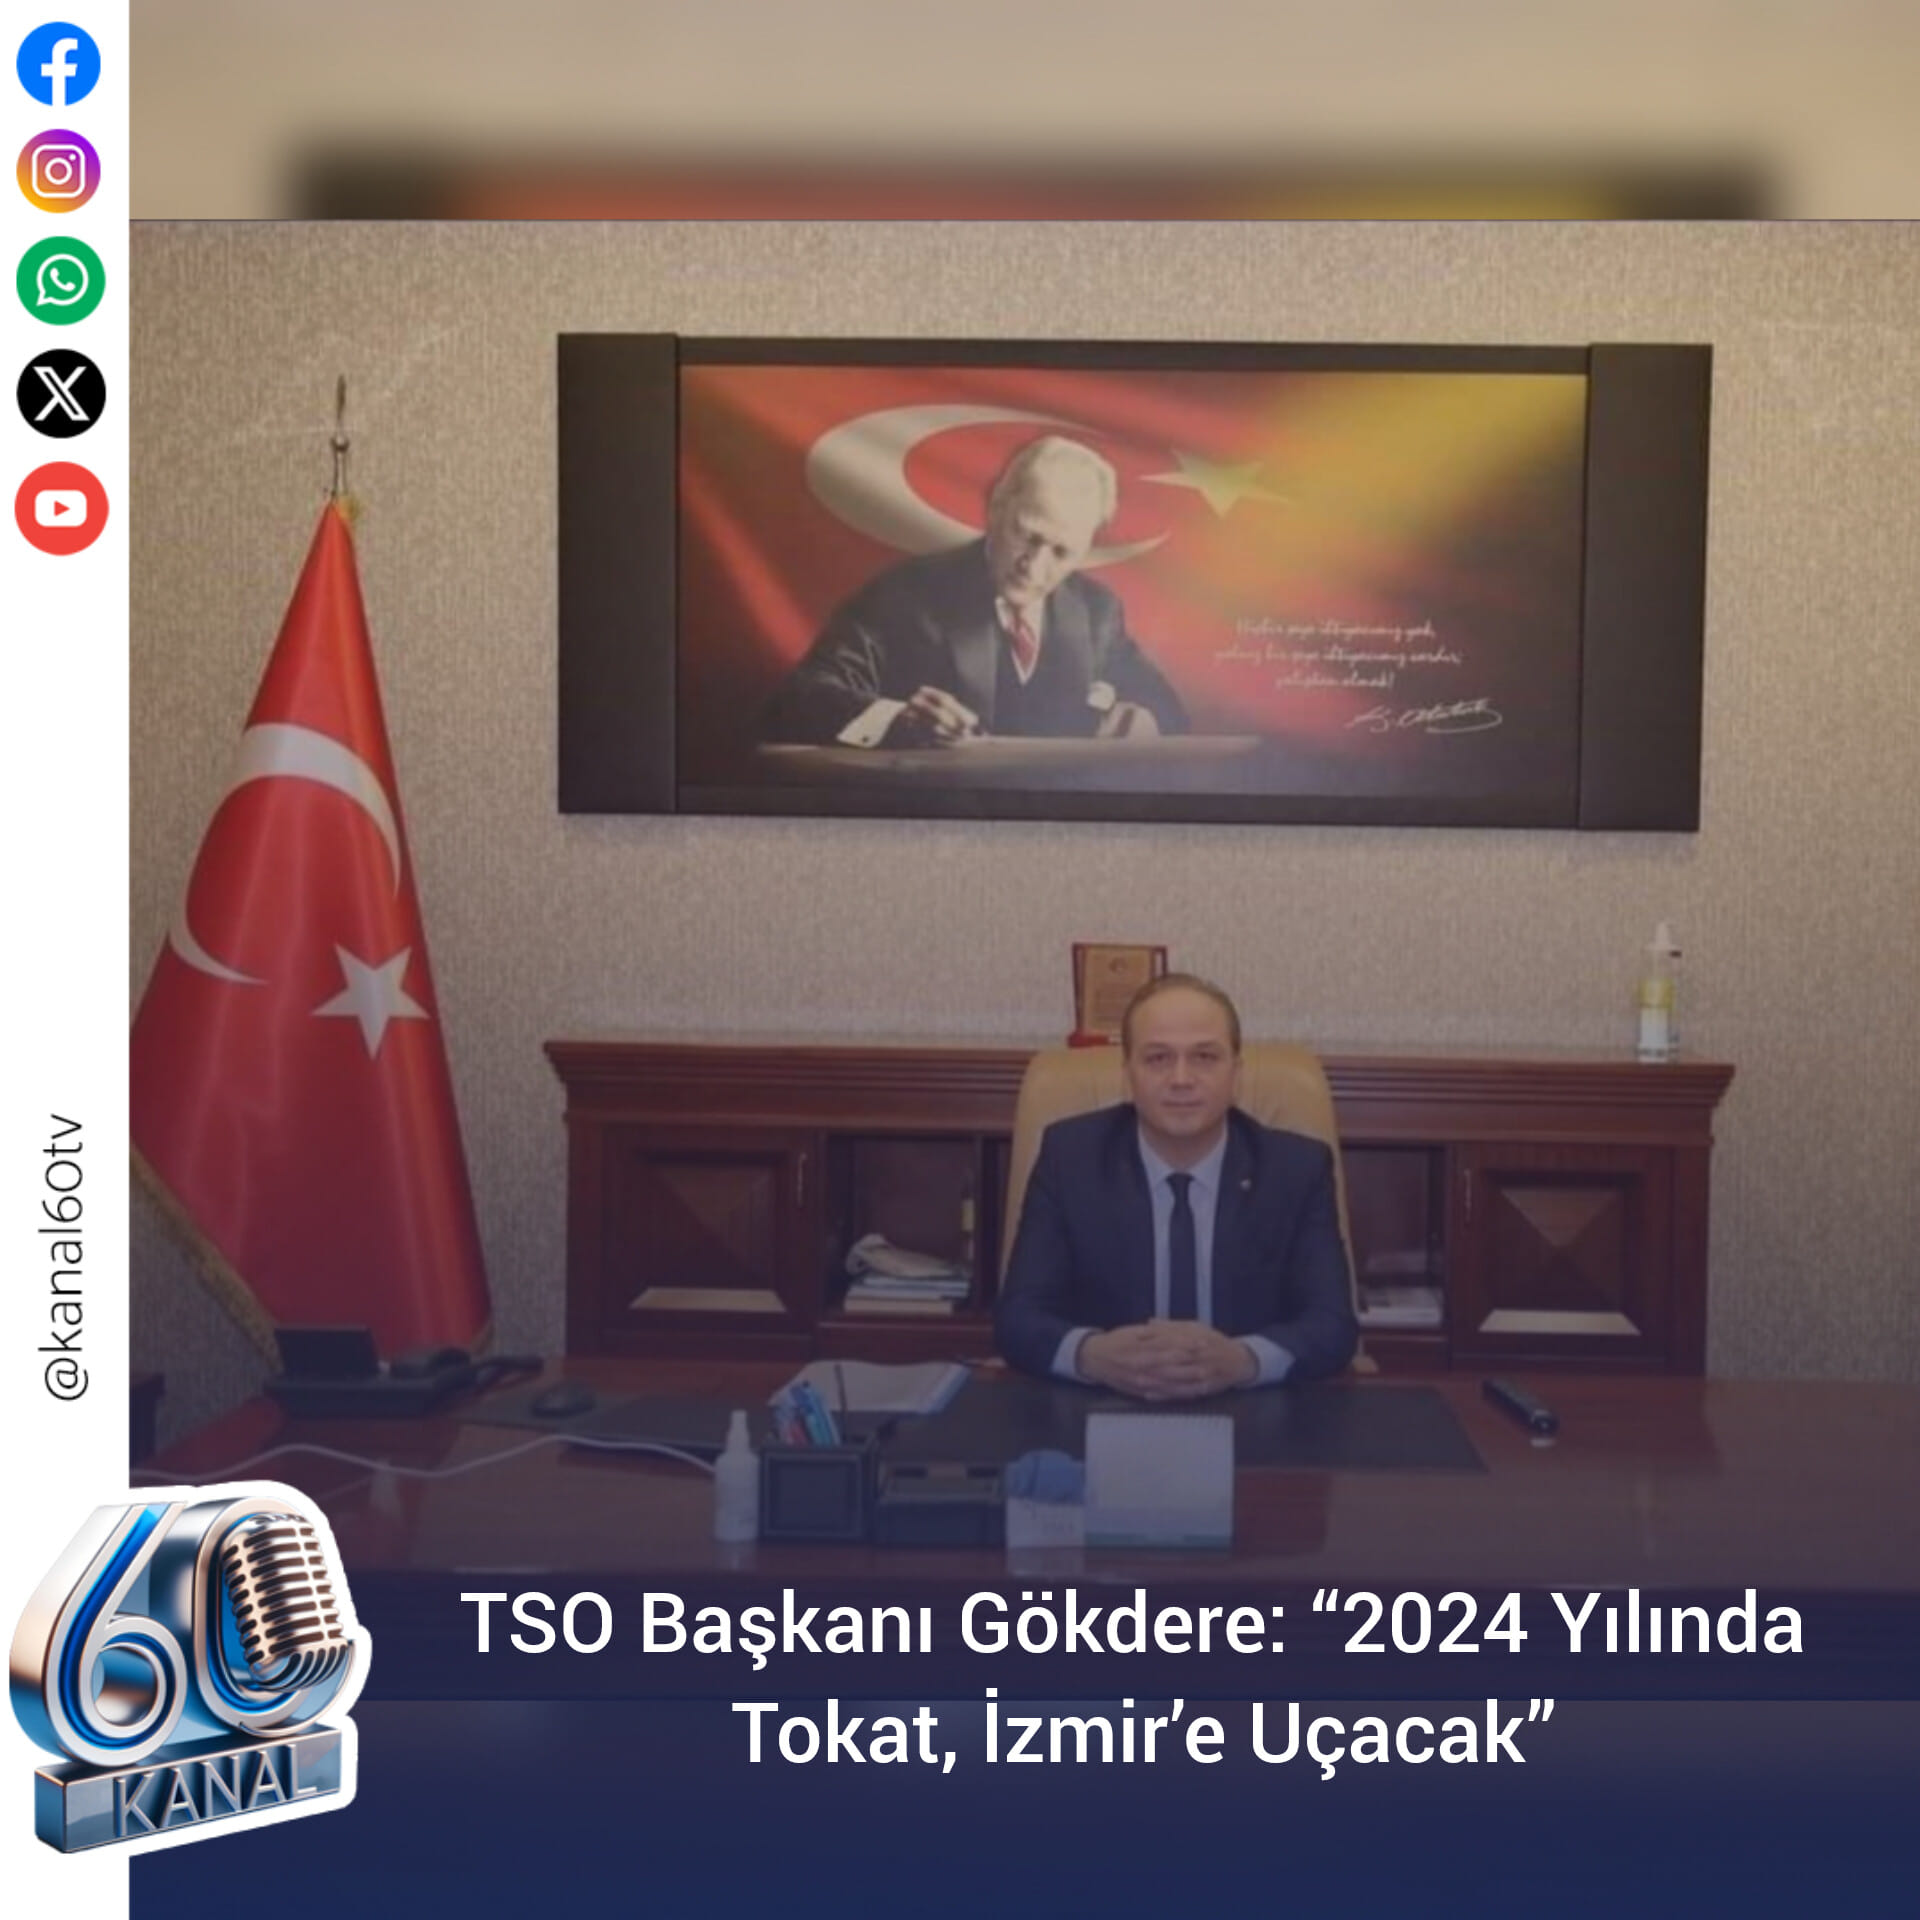 TSO Başkanı Gökdere: “2024 Yılında Tokat, İzmir’e Uçacak”